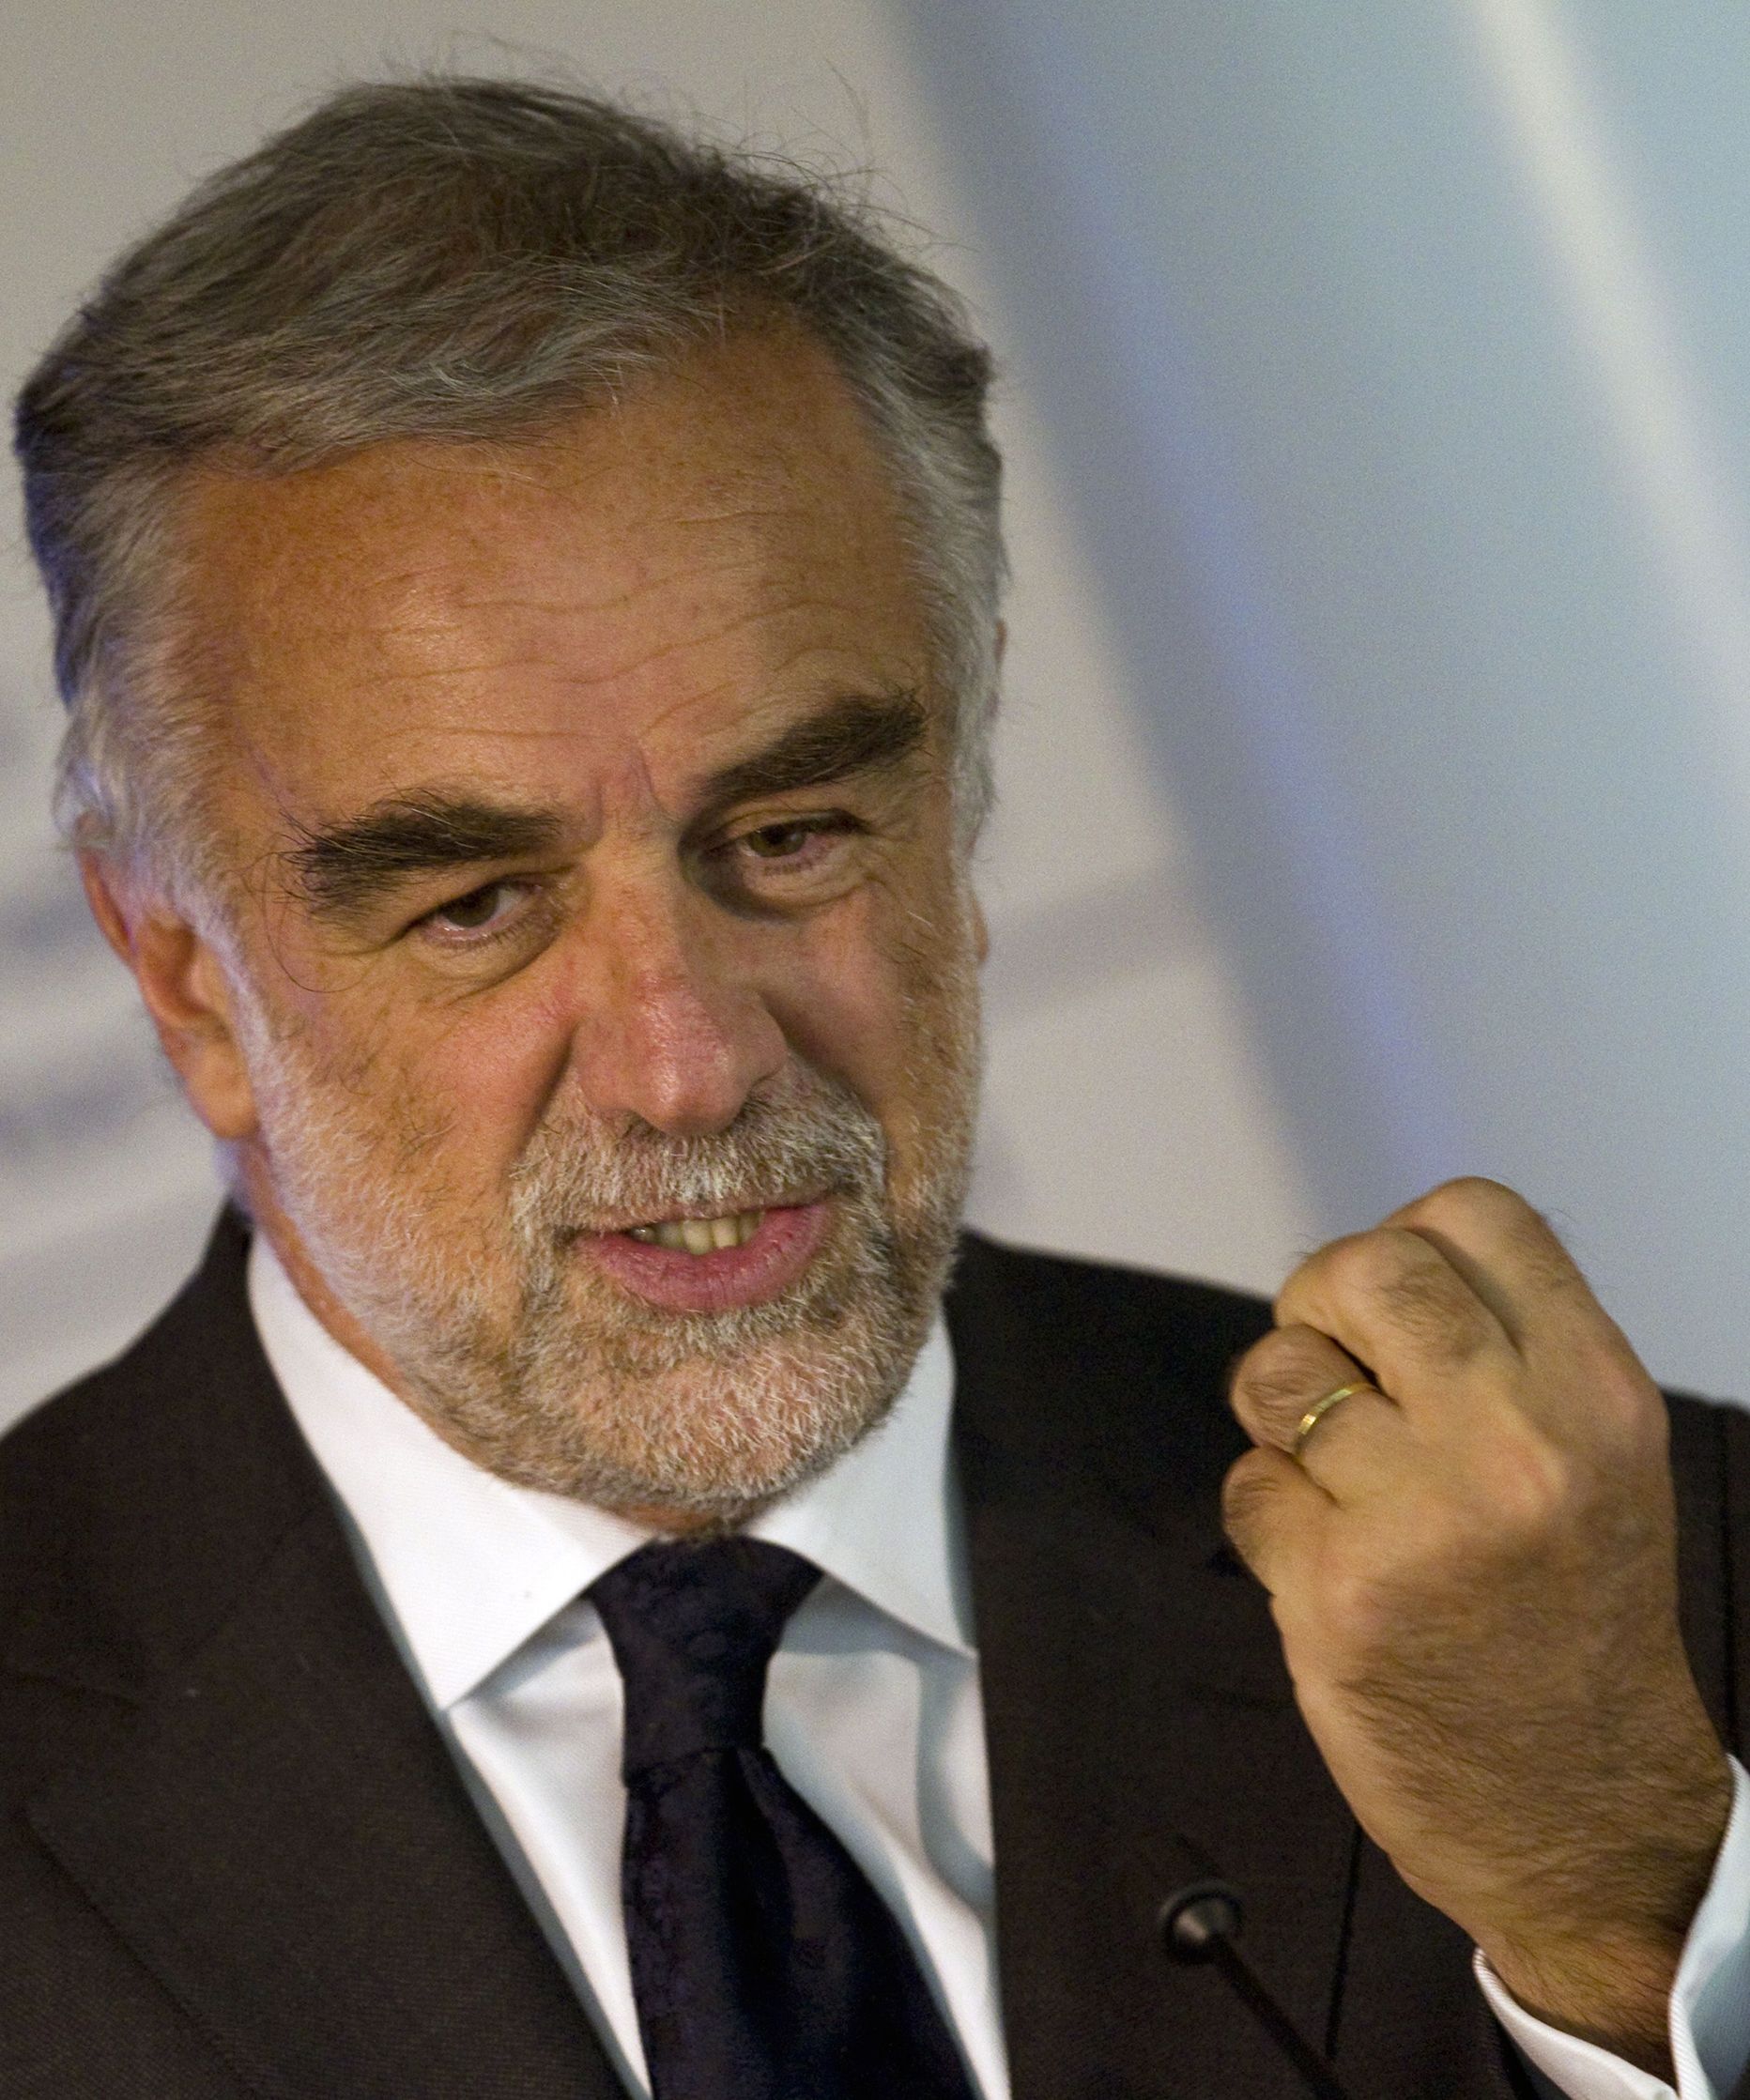 Rahvusvahelise kriminaalkohtu (ICC)prokurör Luis Moreno-Ocampo